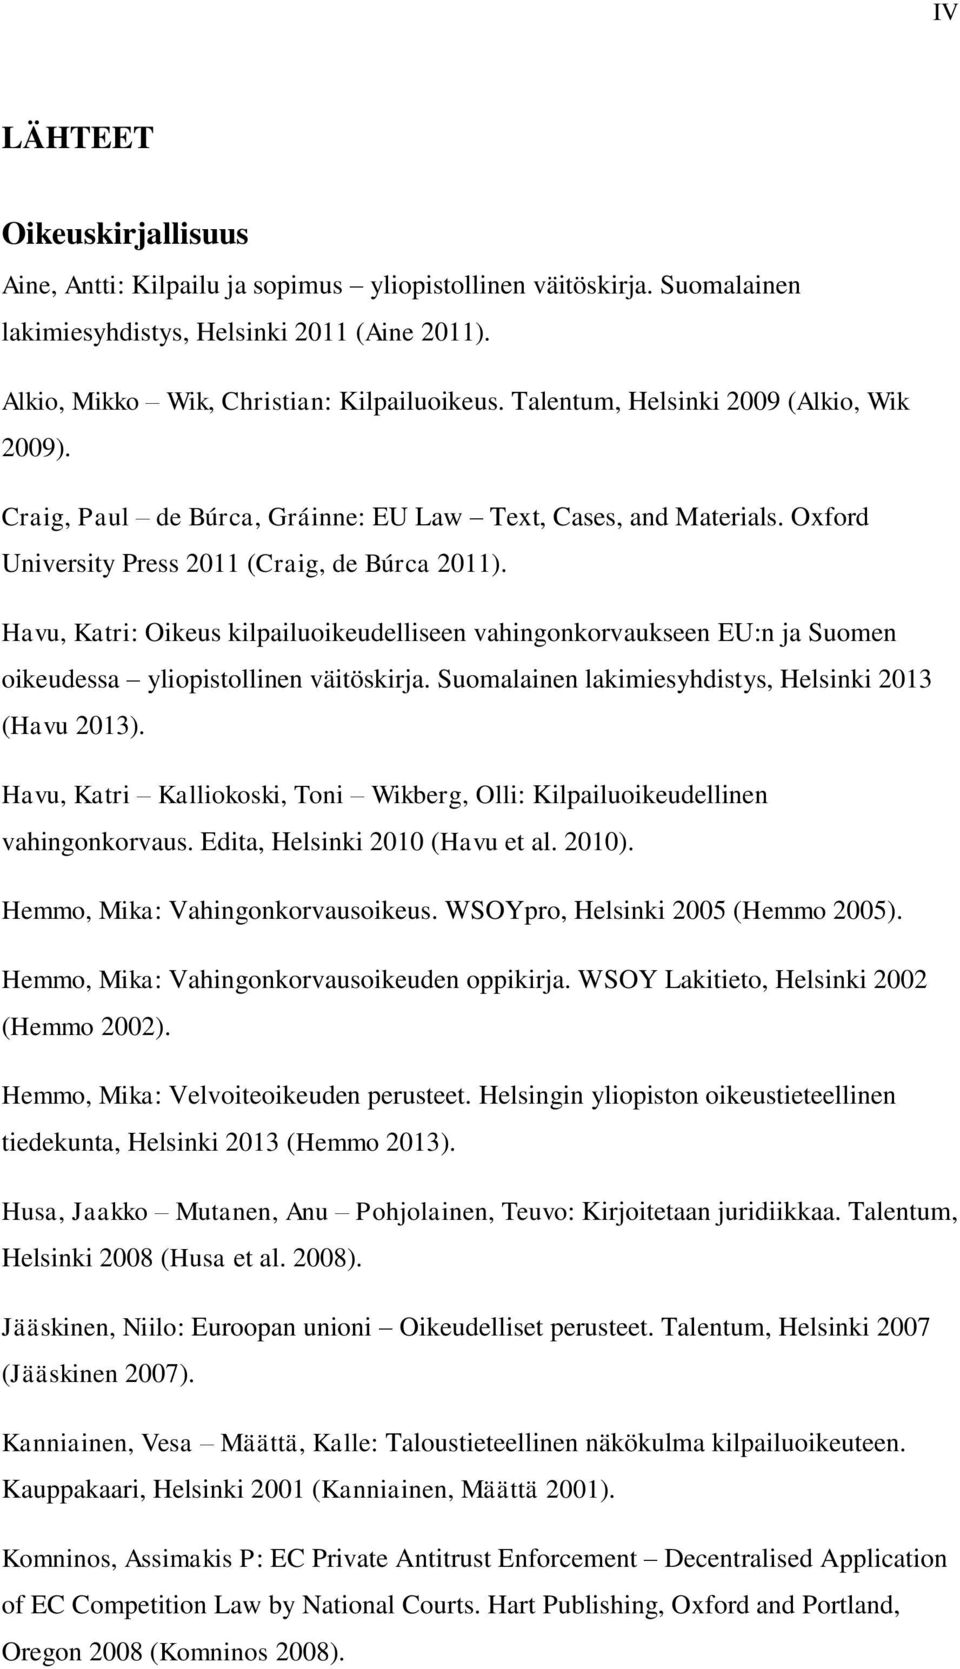 Havu, Katri: Oikeus kilpailuoikeudelliseen vahingonkorvaukseen EU:n ja Suomen oikeudessa yliopistollinen väitöskirja. Suomalainen lakimiesyhdistys, Helsinki 2013 (Havu 2013).